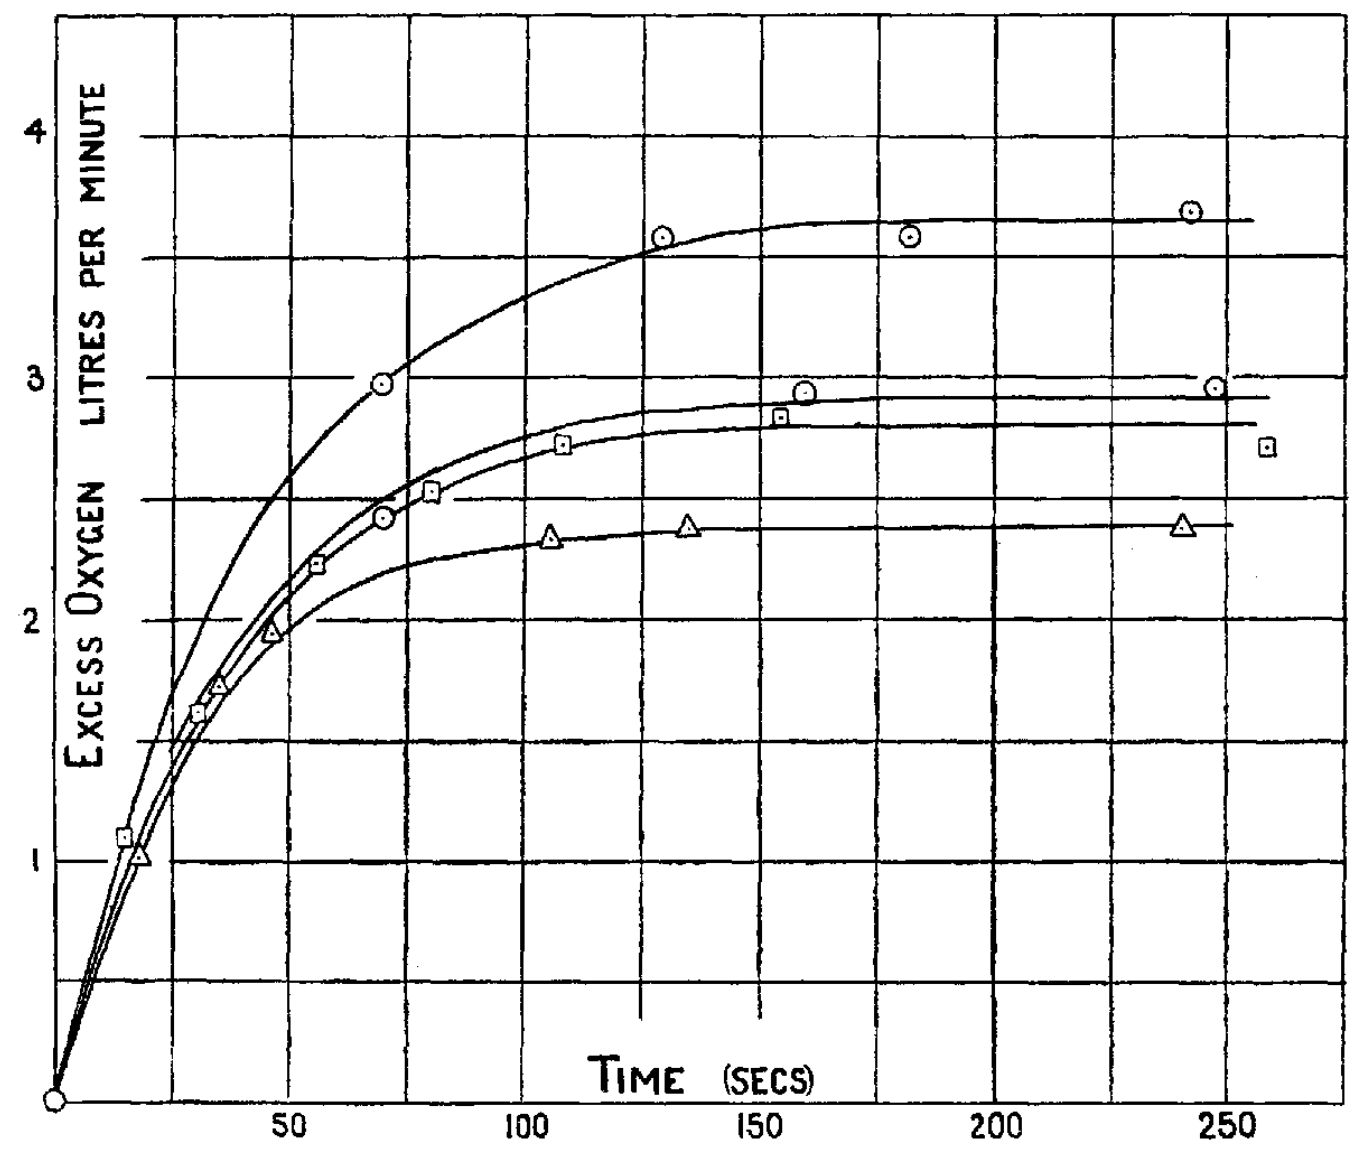 AV Hill original graph